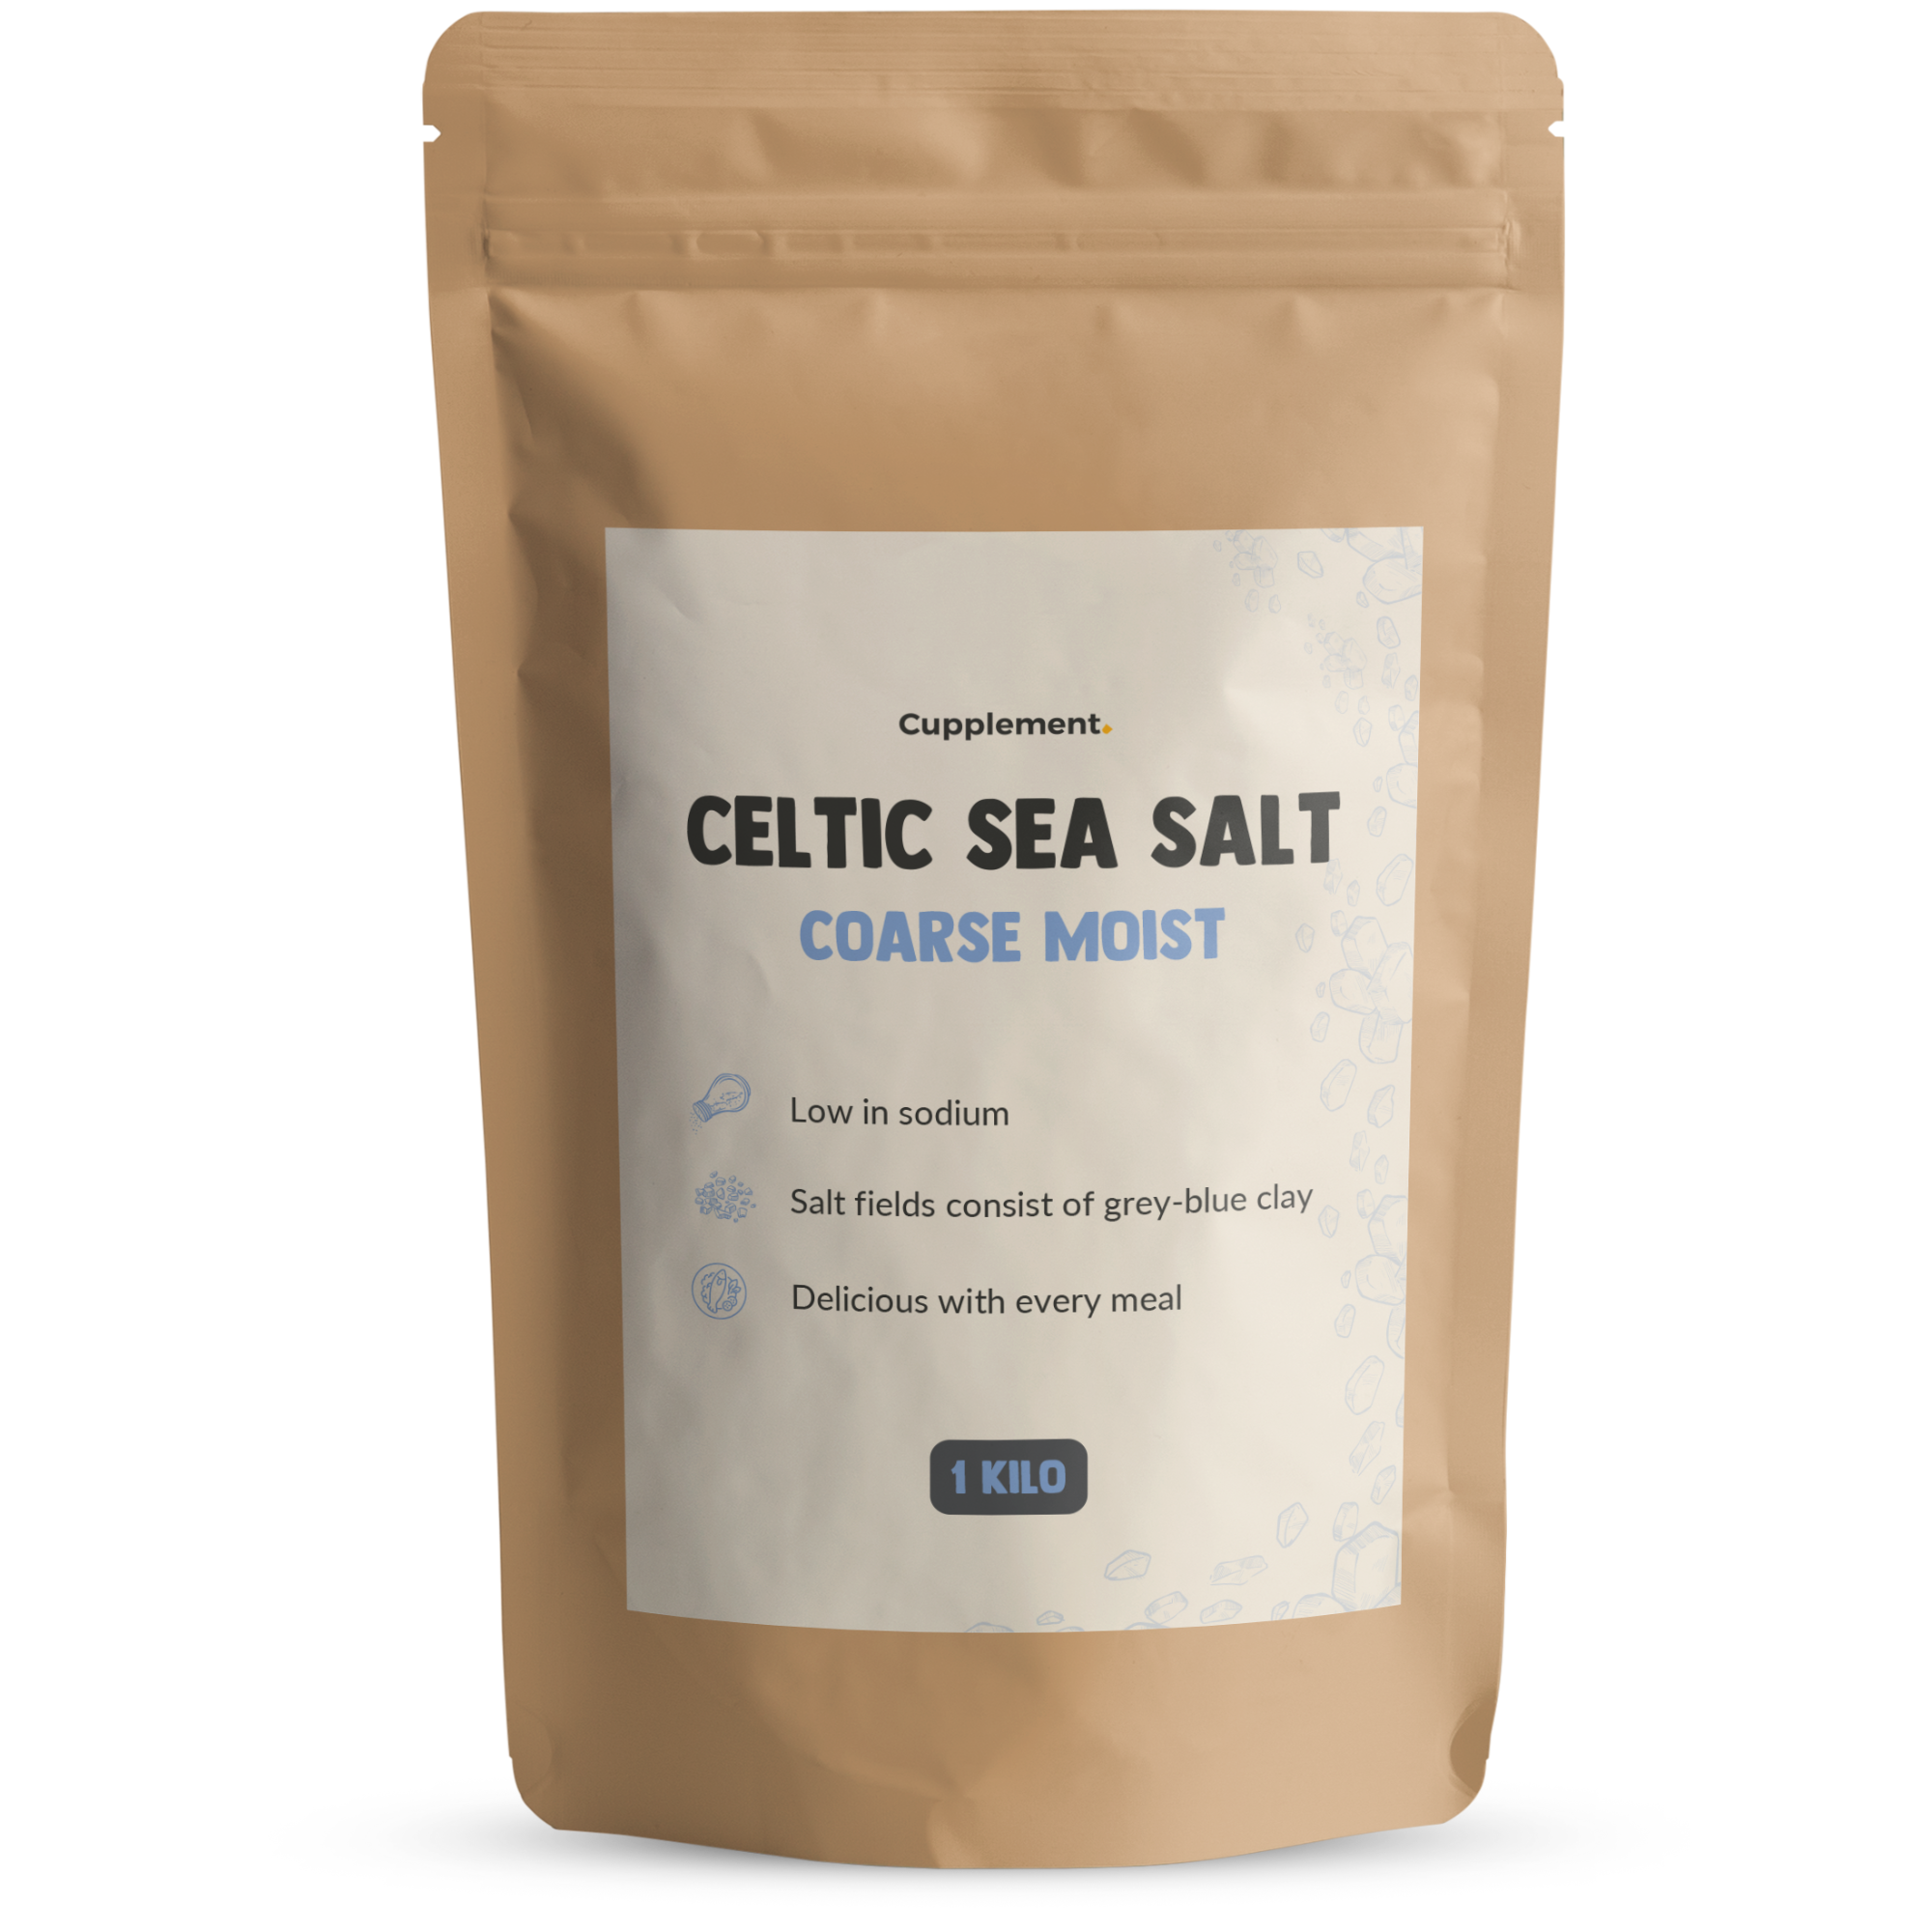 Celtic sea salt